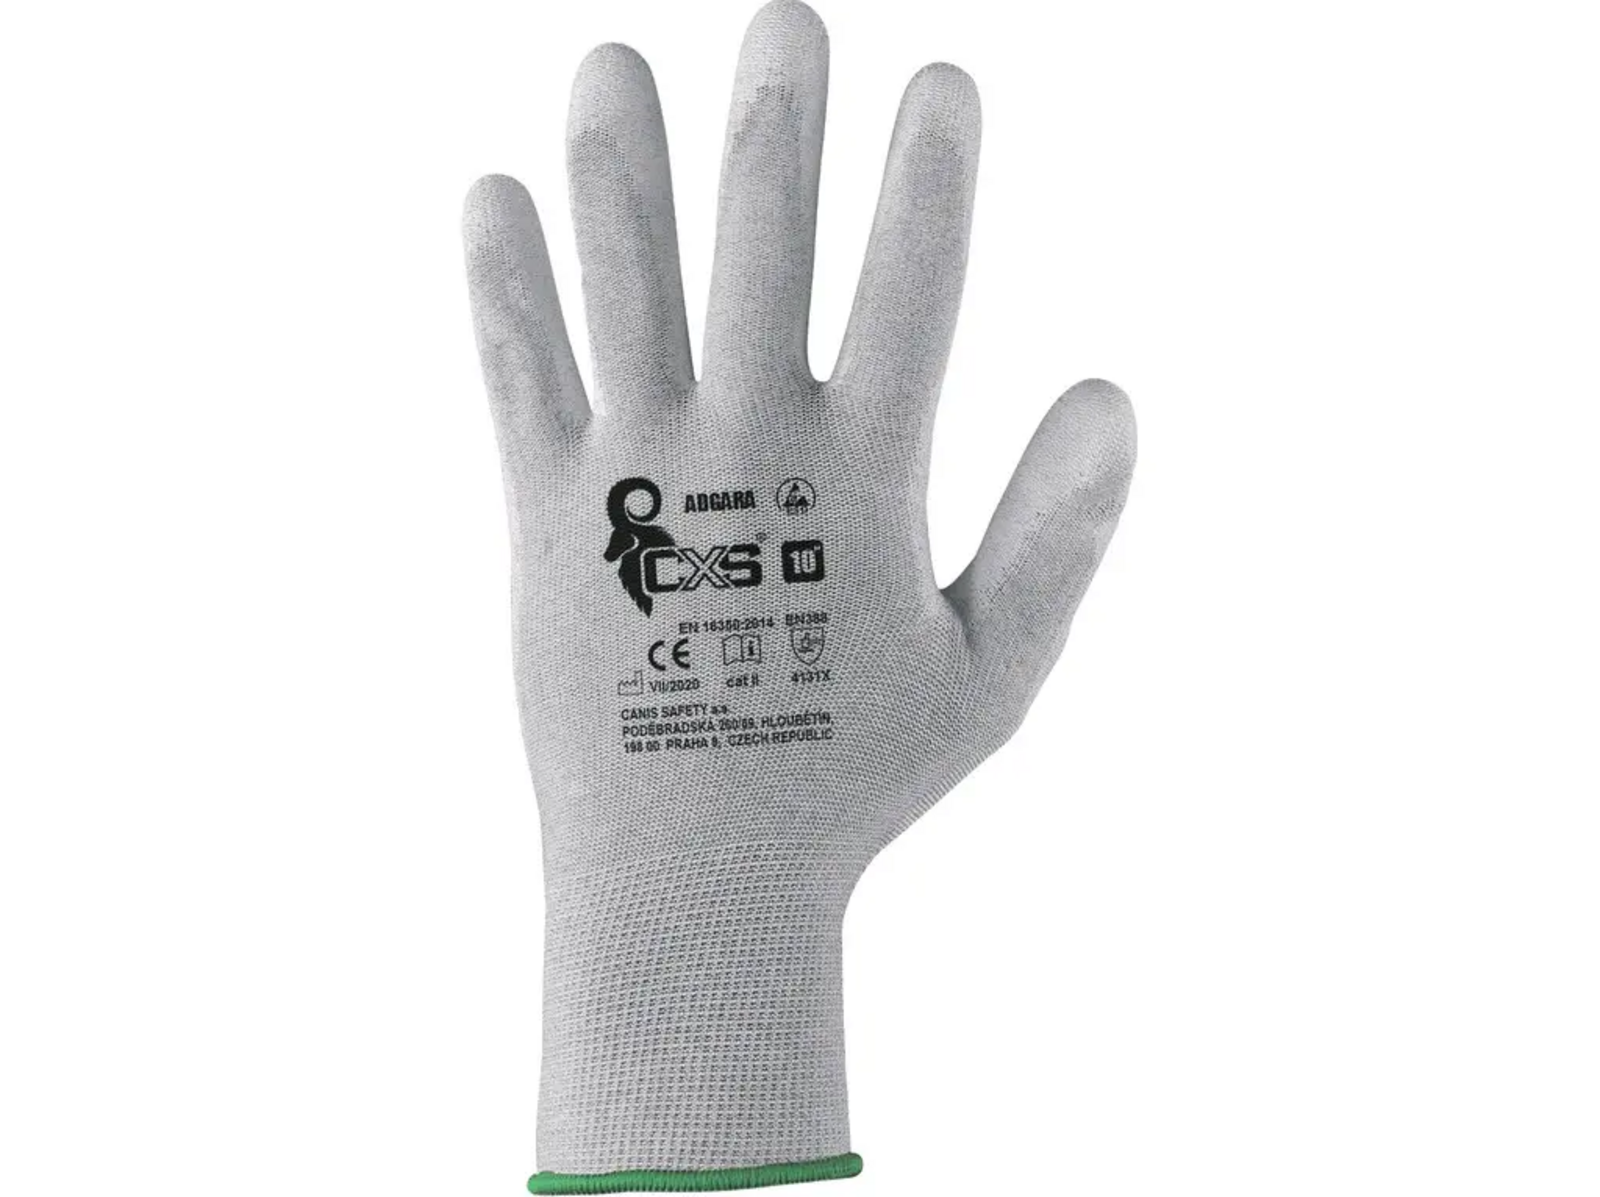 Povrstvené antistatické rukavice CXS Adgara - veľkosť: 9/L, farba: sivá